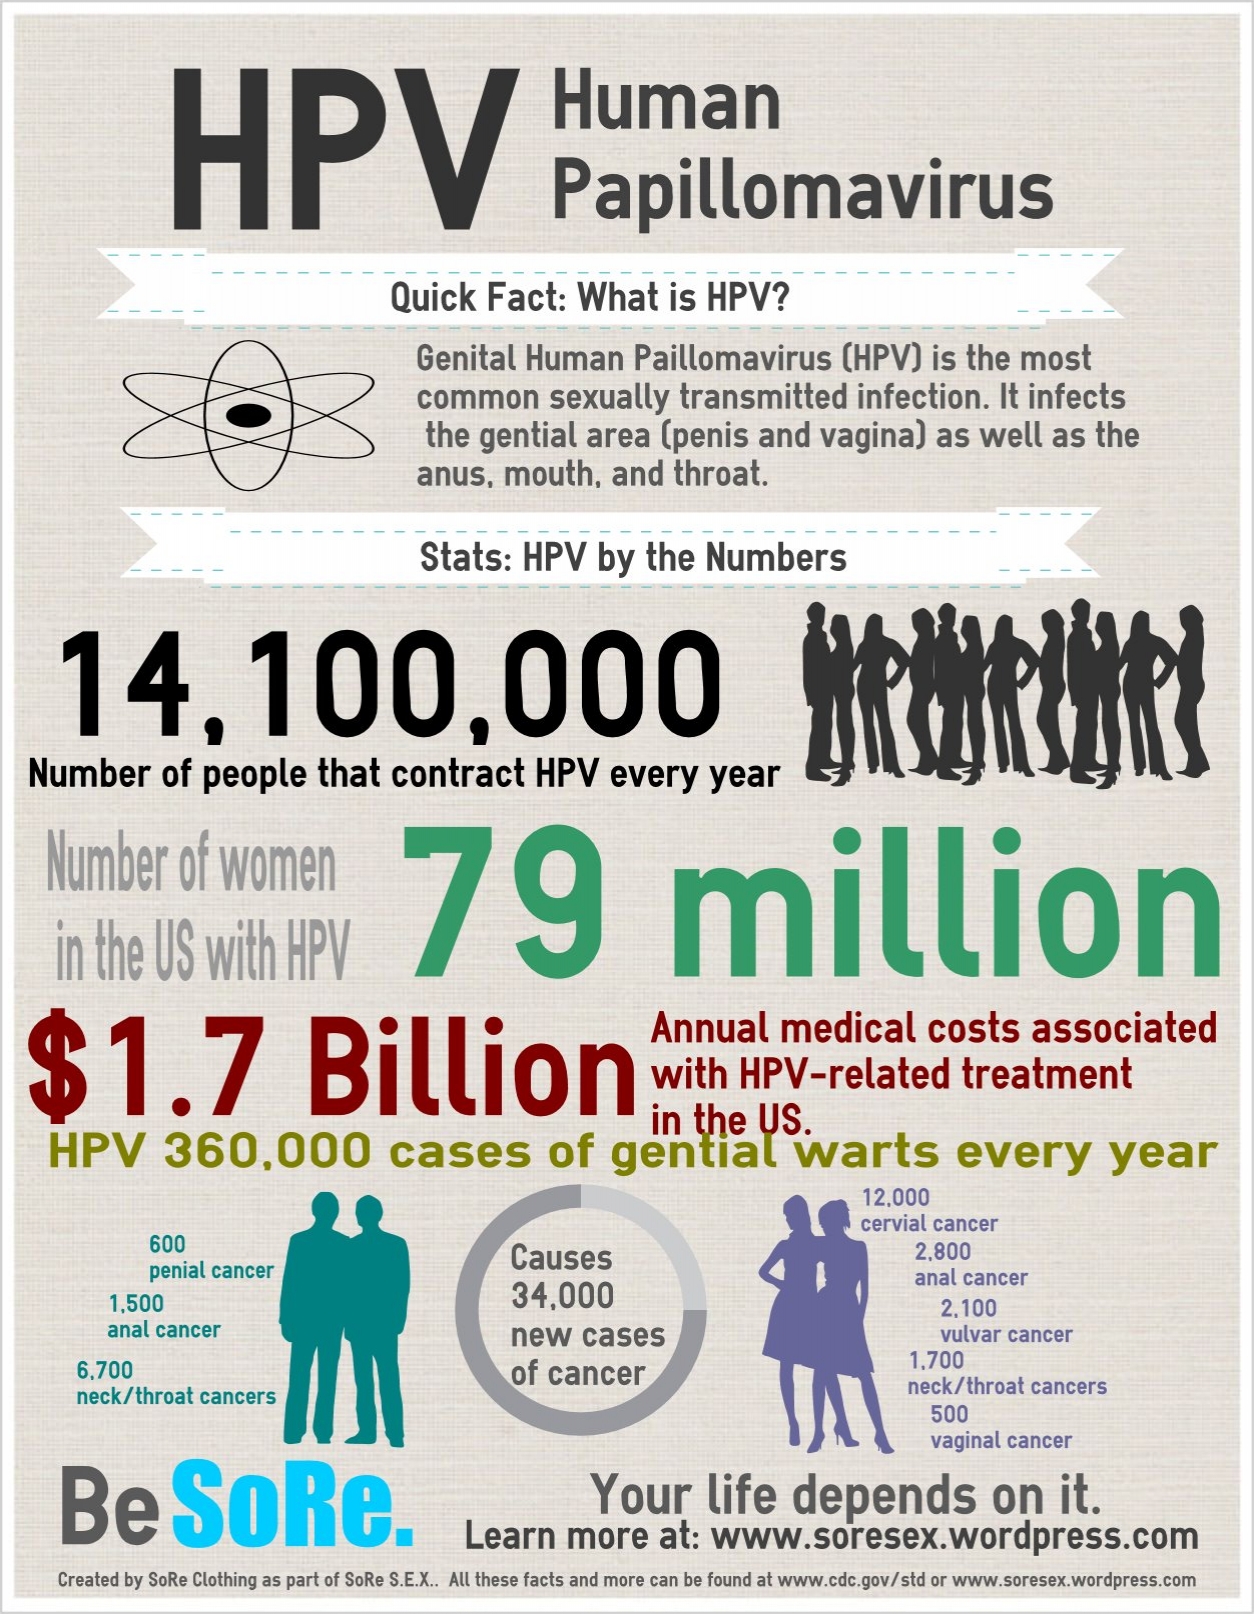 se tratează papilomavirusul?